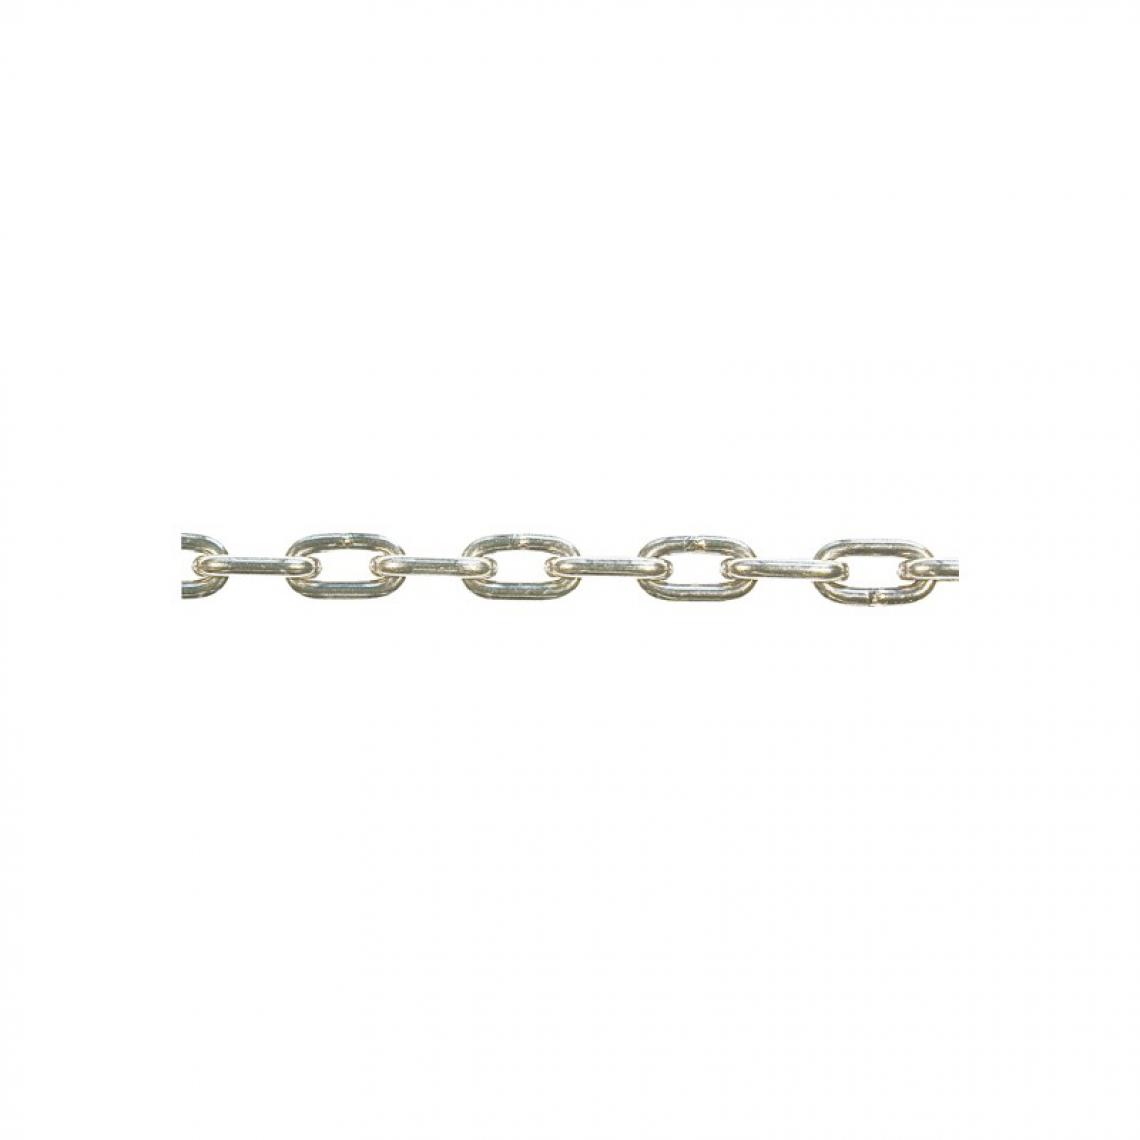 marque generique - Chaine DIN766-A 5x18 inoxydable 30 m (Par 30) - Corde et sangle